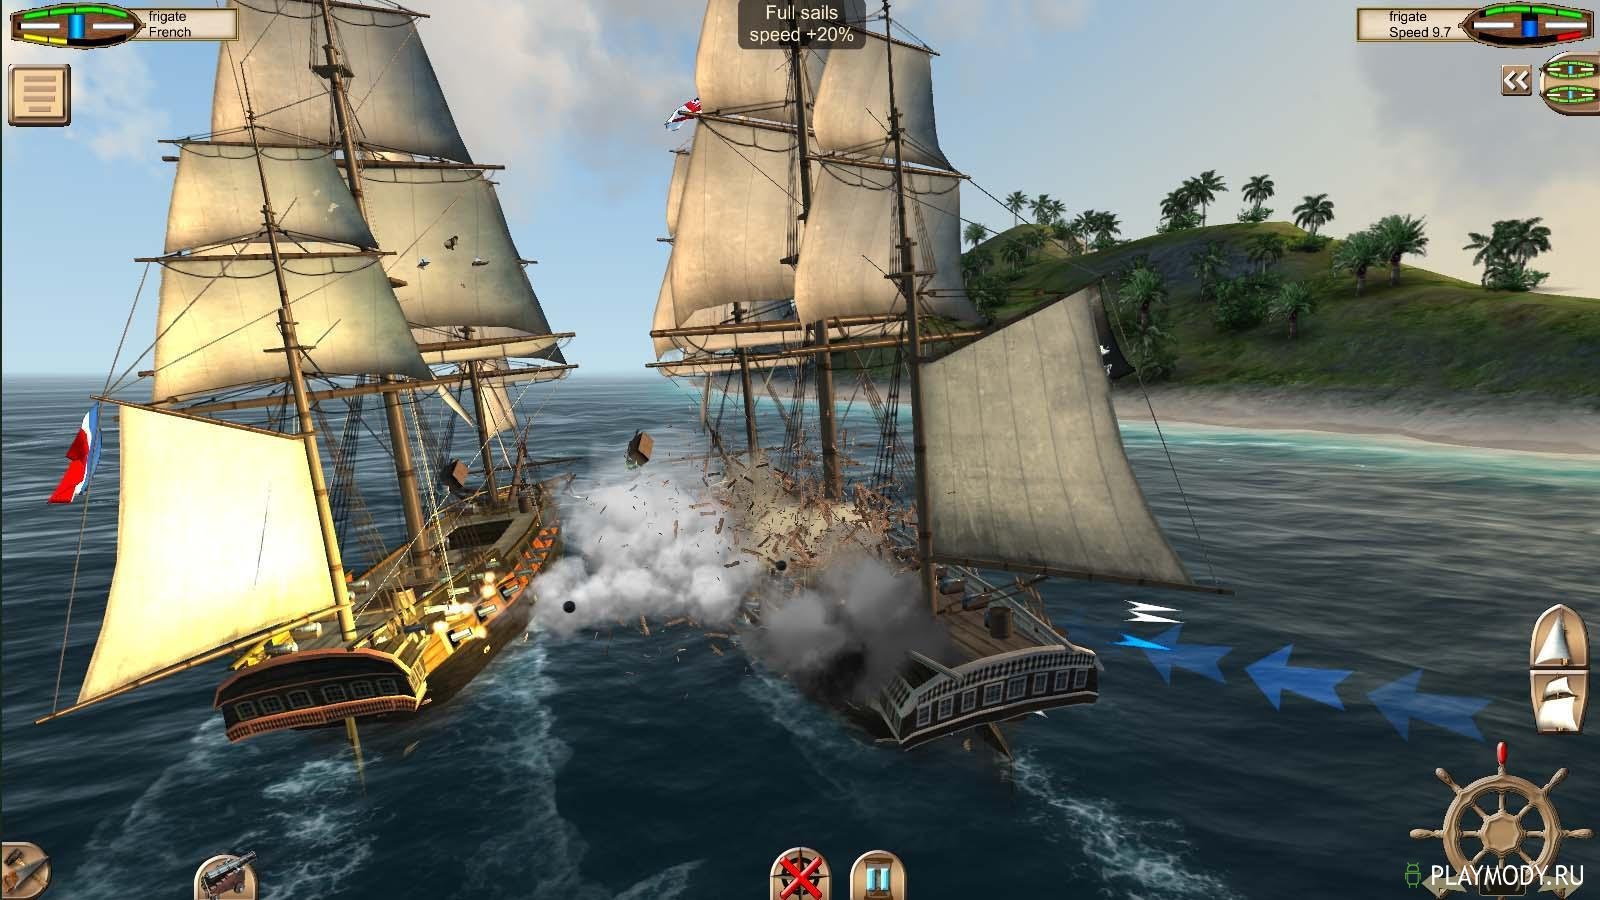 Скачать взломанную версию The Pirate: Caribbean Hunt v 10.0.2 Мод неогранич...